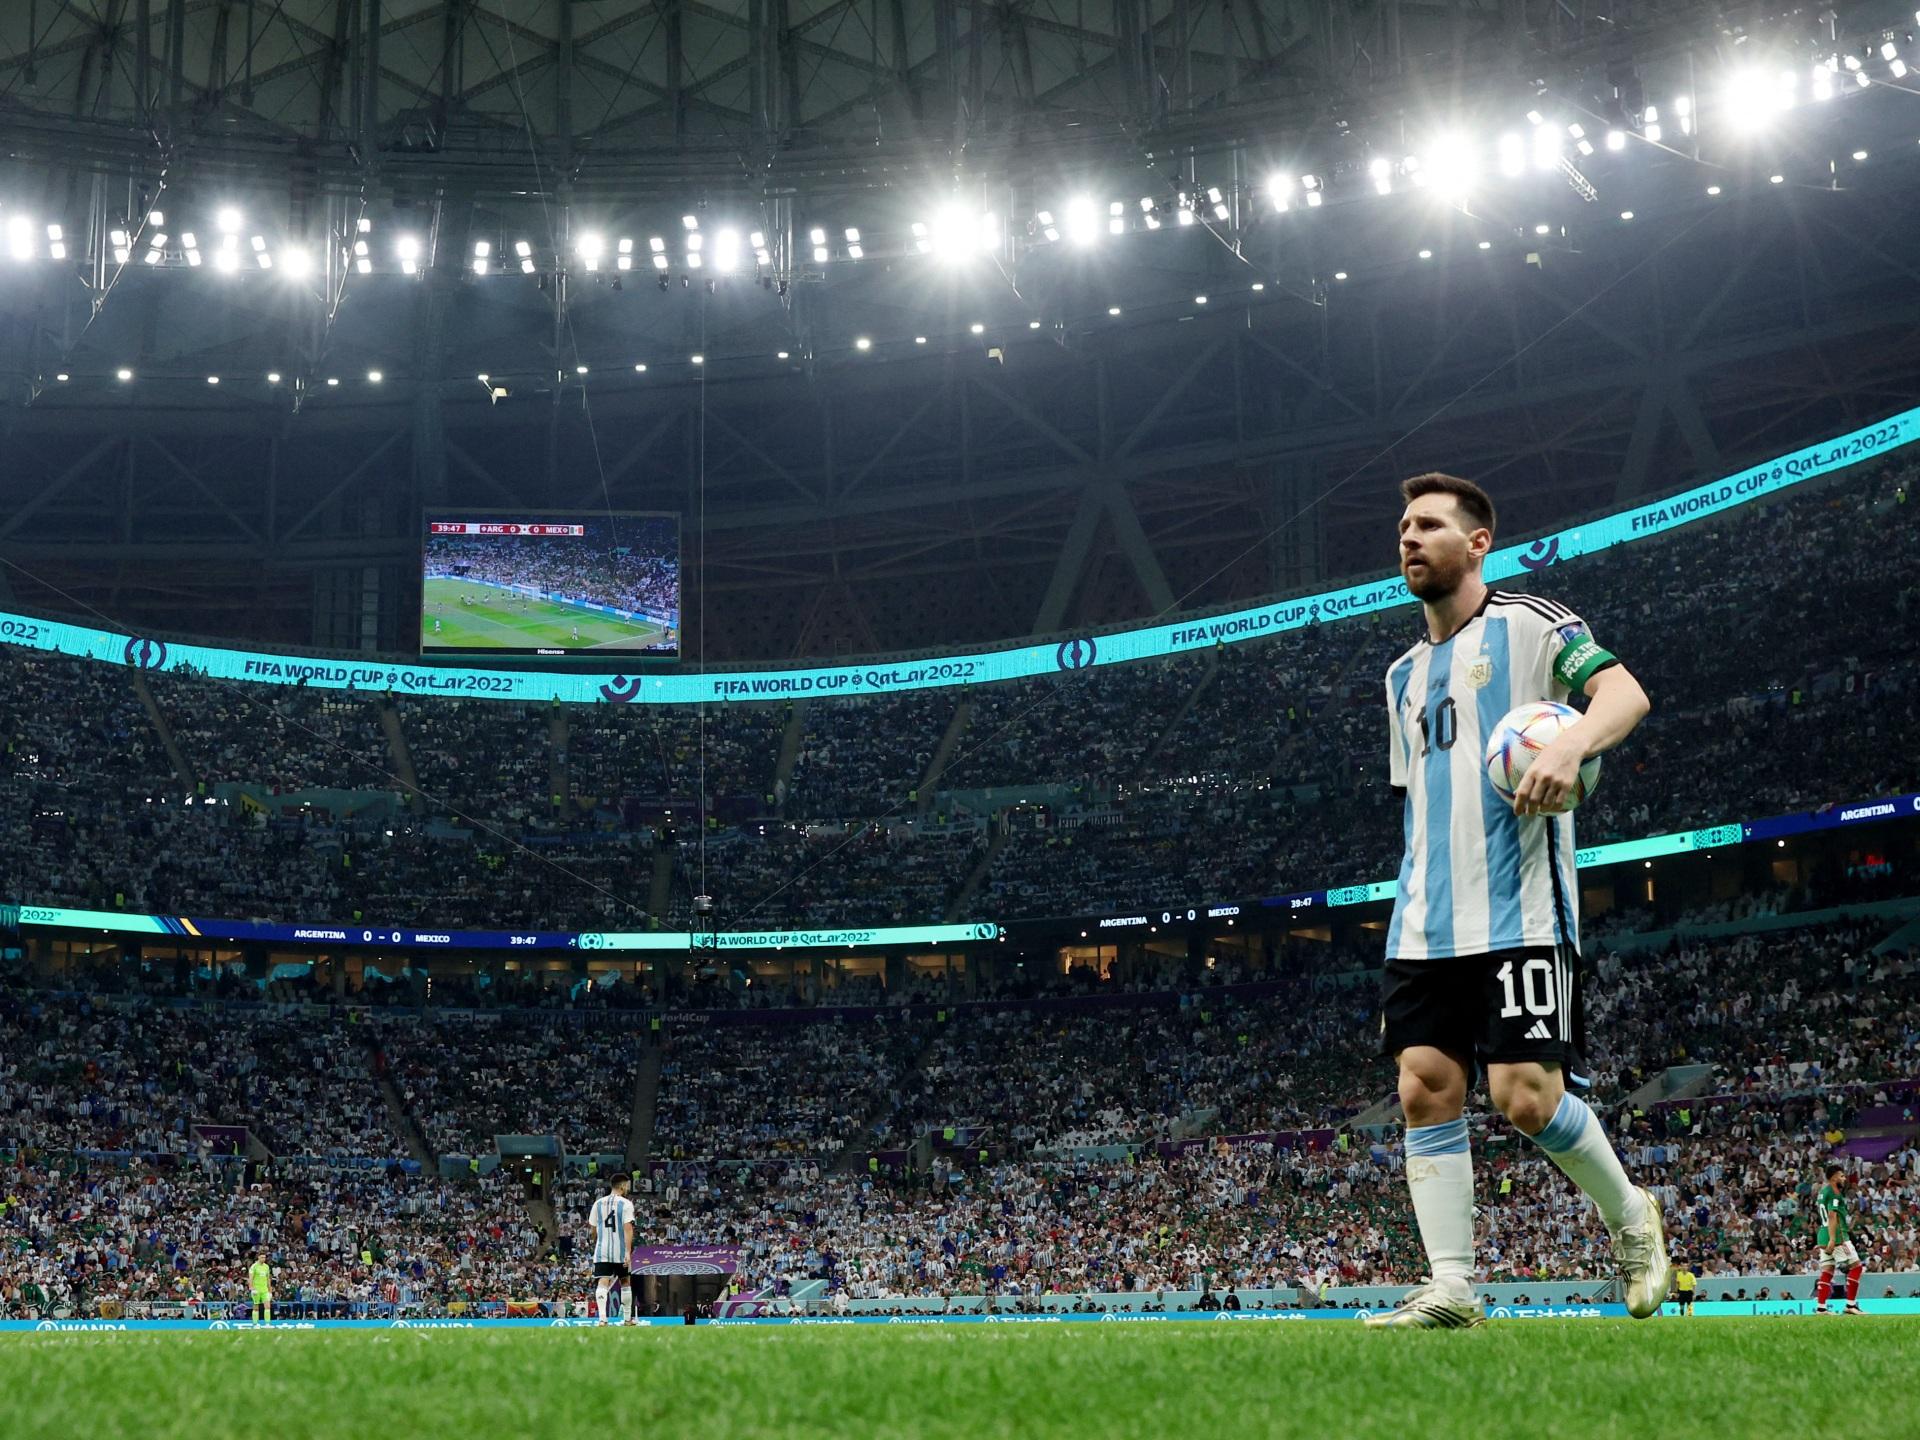 Mời bạn đến khám phá những hình nền về World Cup của Messi đẹp lung linh, tạo cảm hứng cho những ai yêu thích bóng đá và đặc biệt là siêu sao Messi. Tận hưởng khoảnh khắc phấn khích và háo hức trước khi trận đấu bắt đầu.